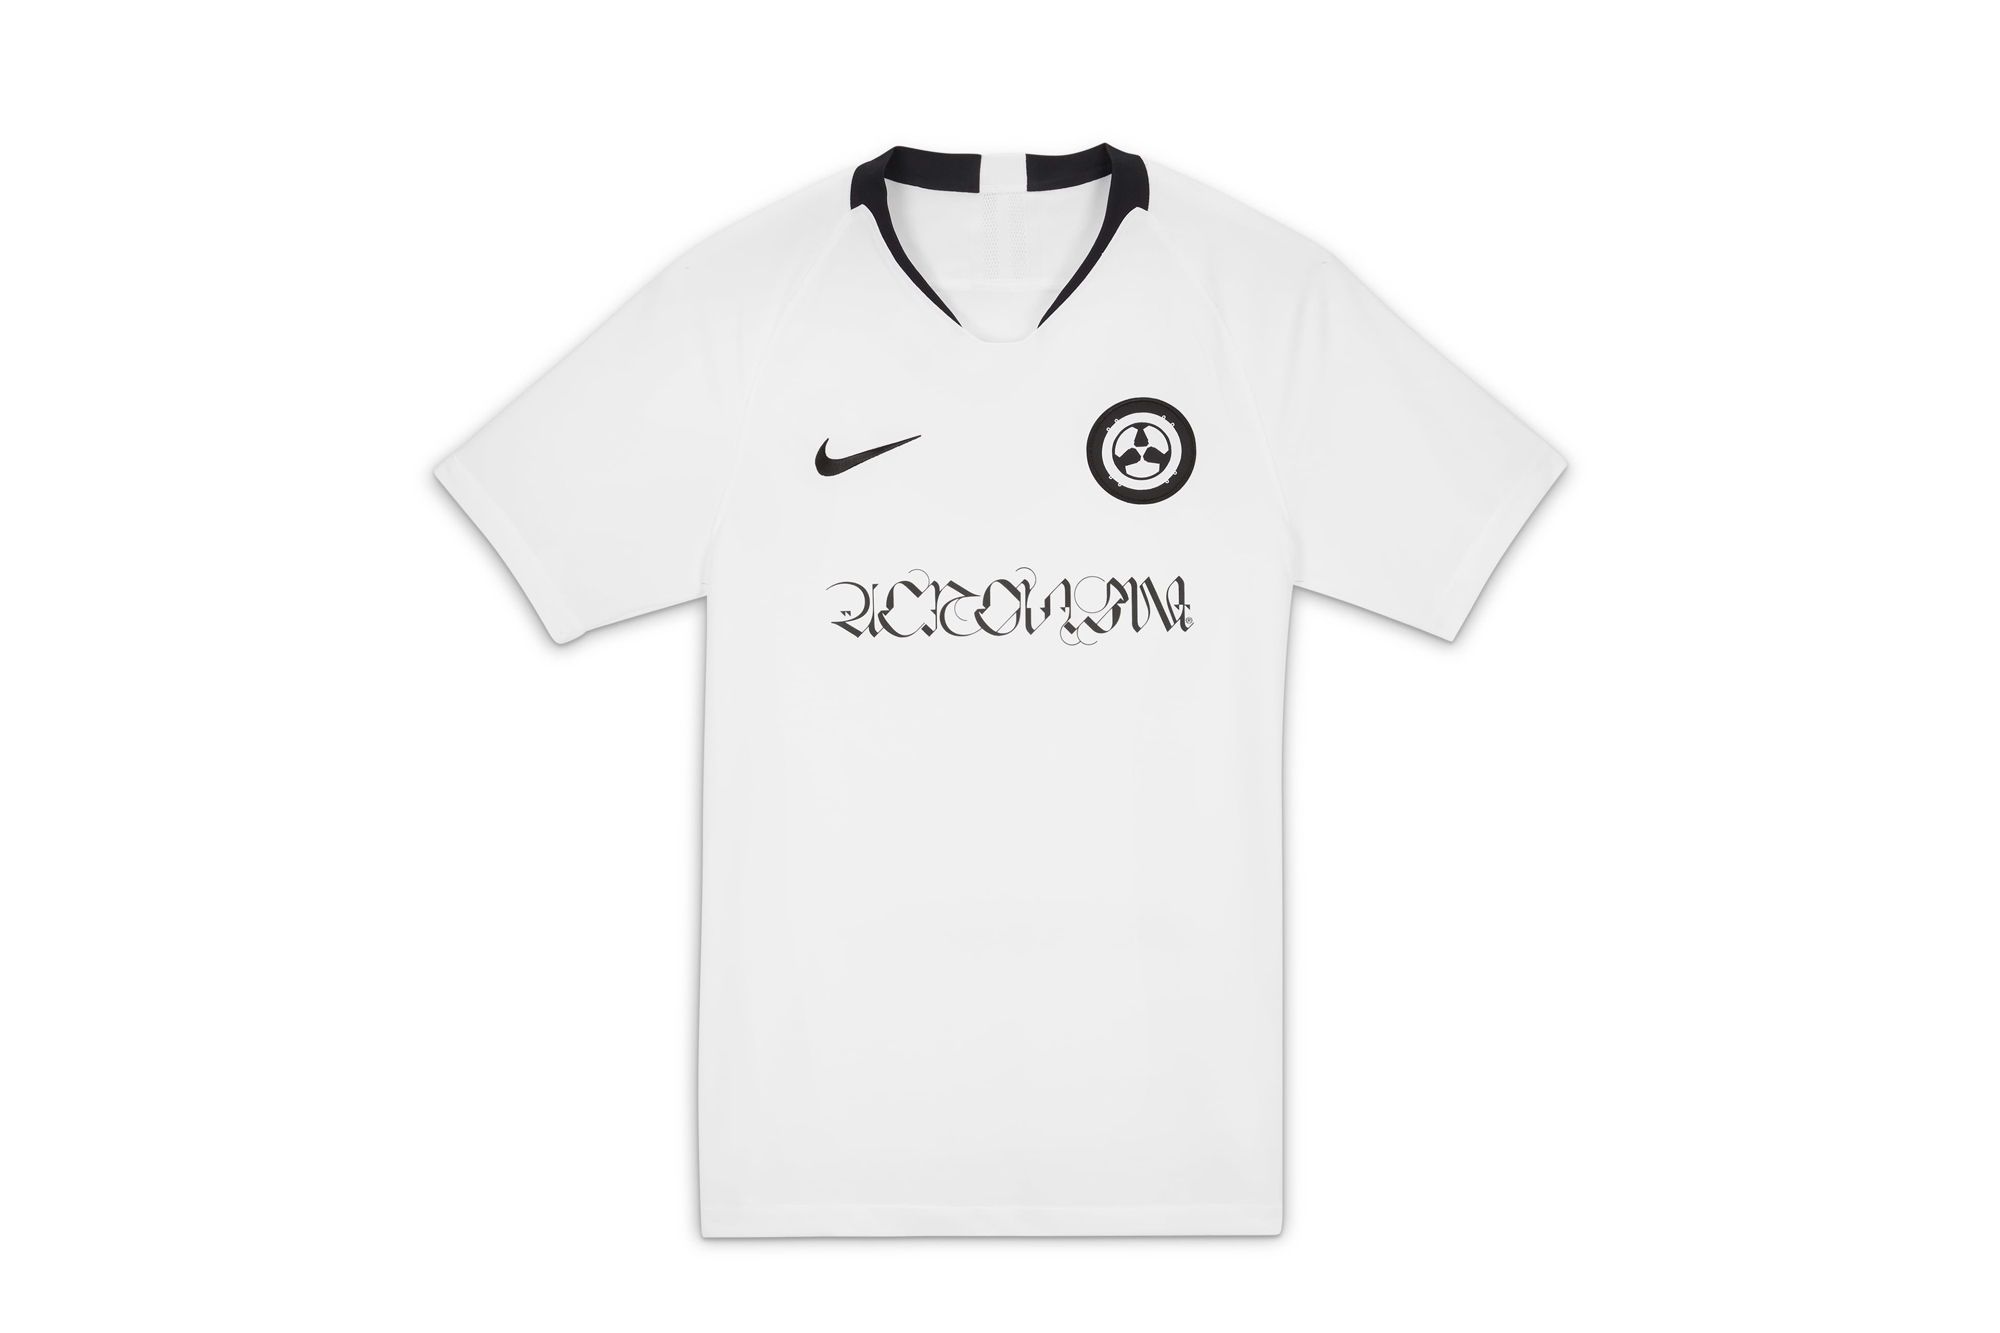 ACRONYM x Nike Soccer Jersey